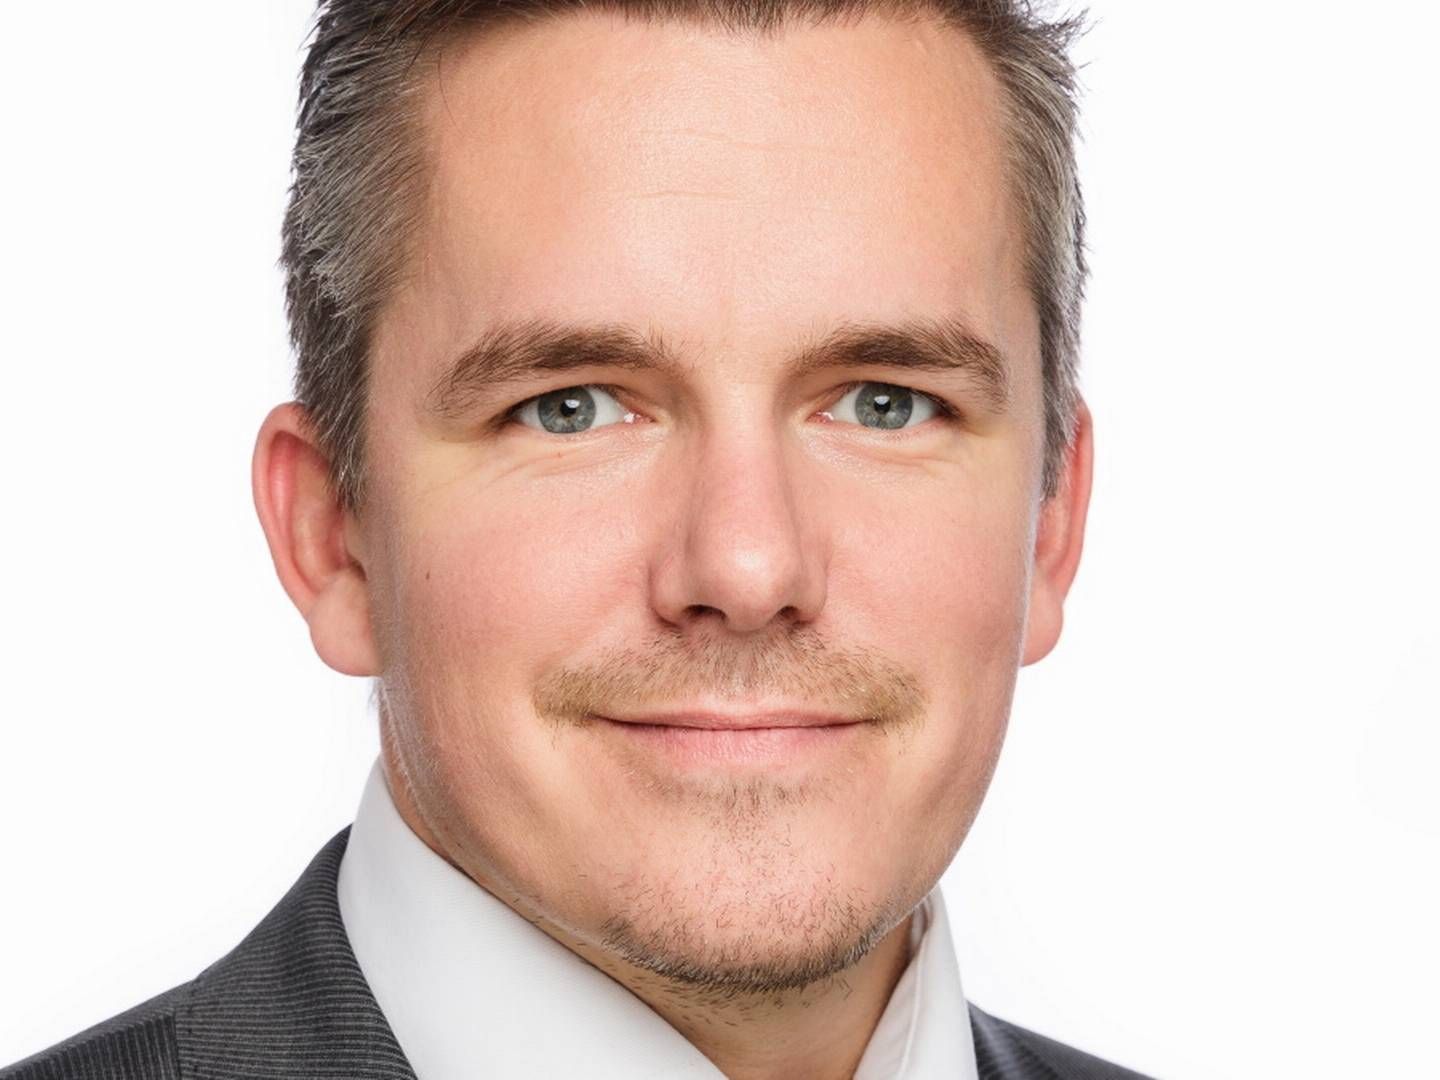 FORNØYD NREP LOGICENTERS-TOPP: Ruben Krantz Kringstad, Commercial Manager i Logicenters, kan endelig offentliggjøre avtalen med Schibsted | Foto: PR / Nrep Logicenters